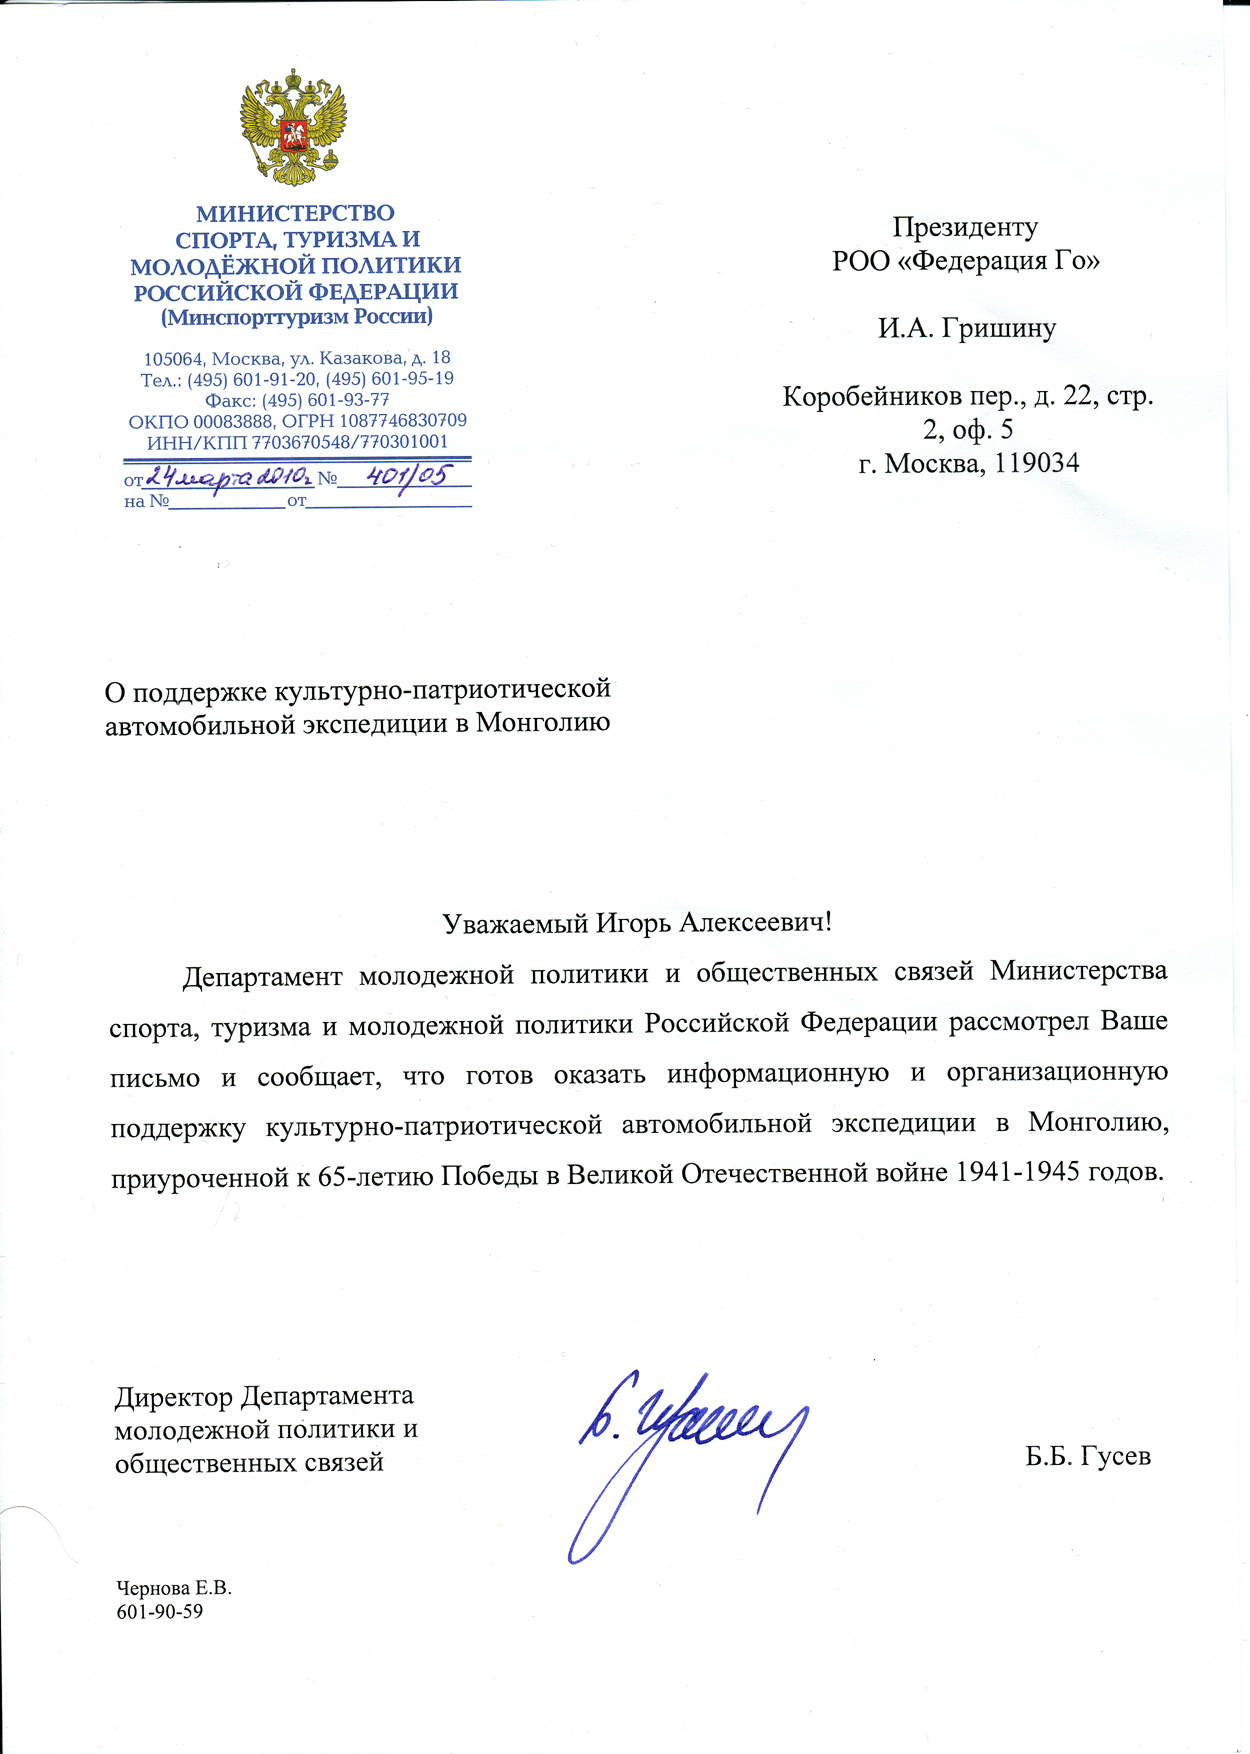 письмо Министерства спорта, туризма и молодежной политики РФ, Министерства иностранных дел РФ